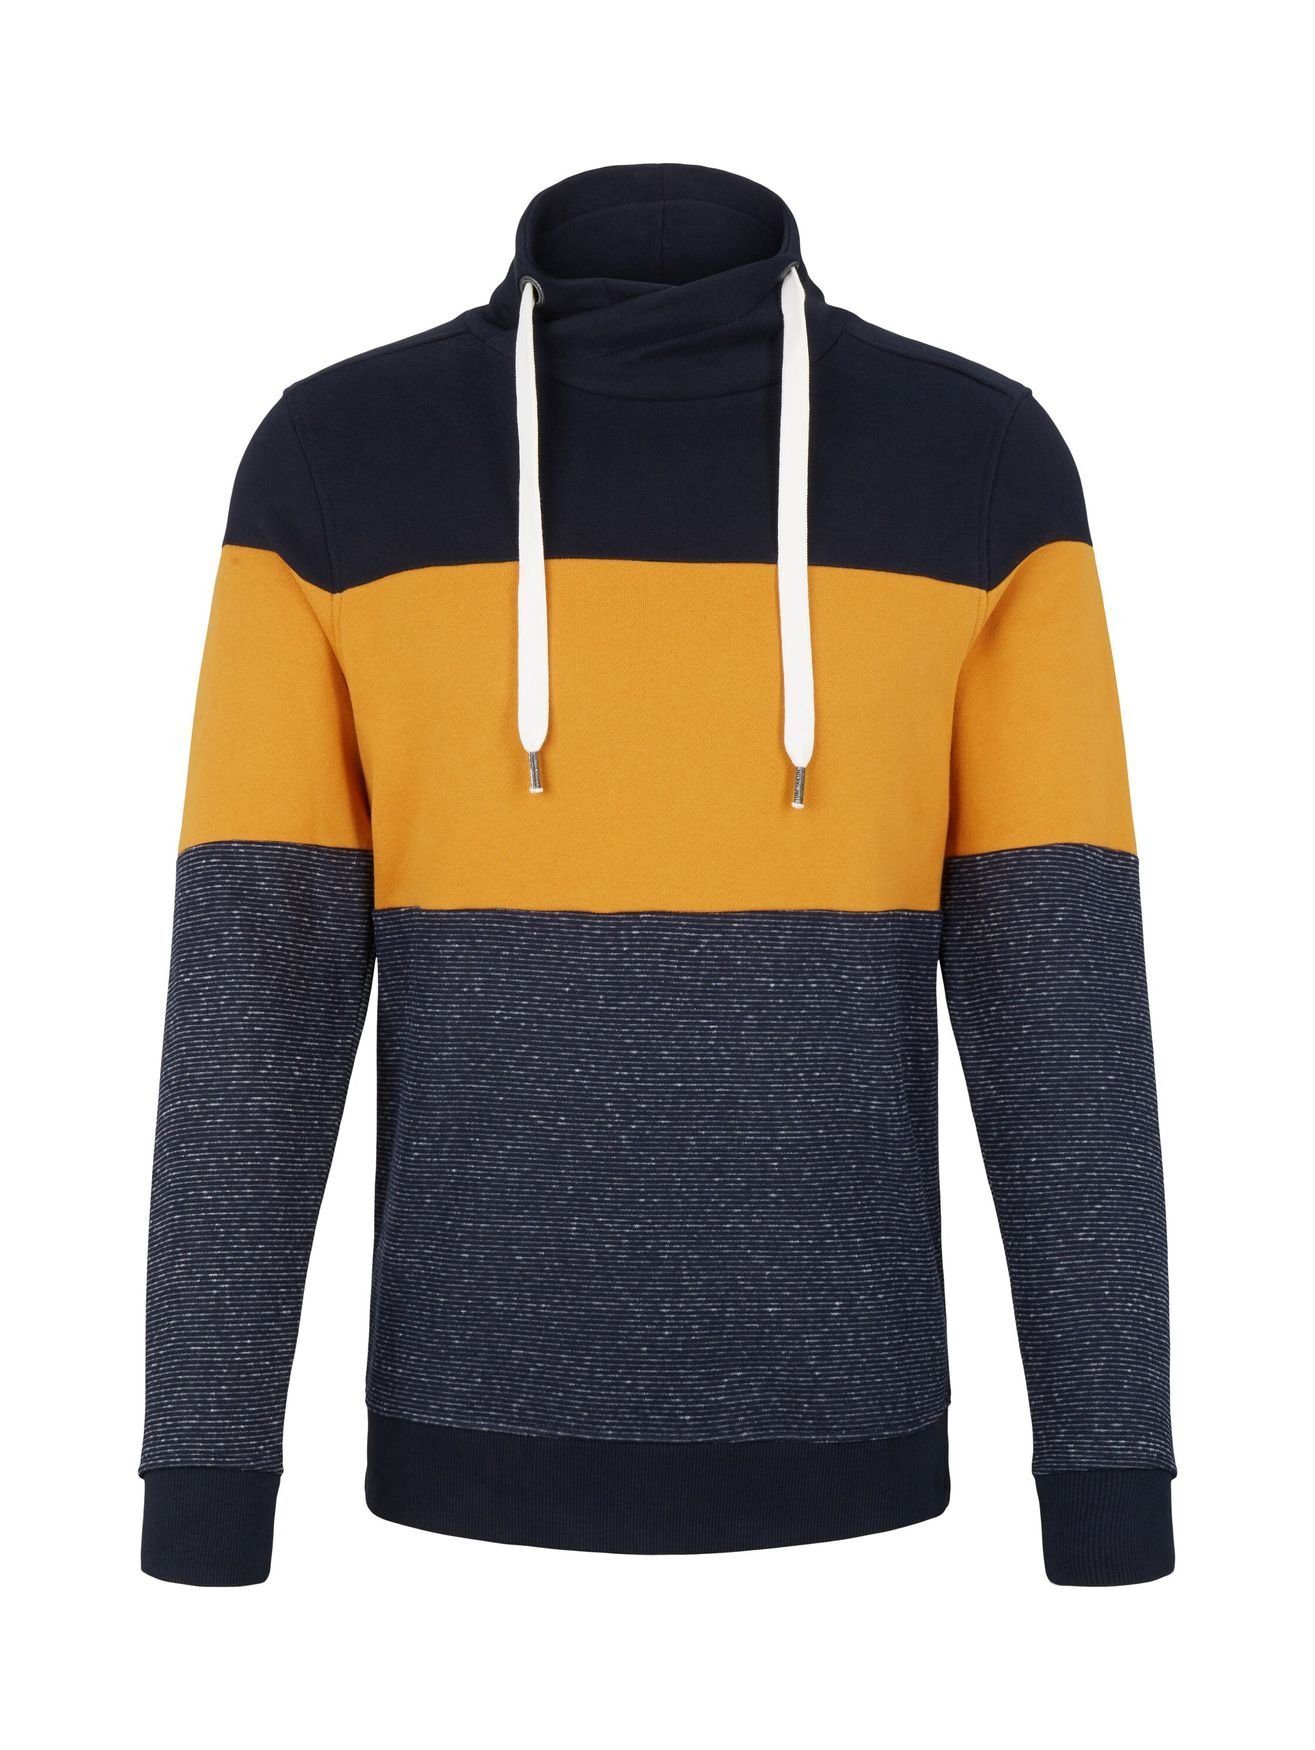 snood Colorblock Blau Gestreifter TOM Sweater 4667 Strickpullover Pullover Schalkragen cutline in TAILOR